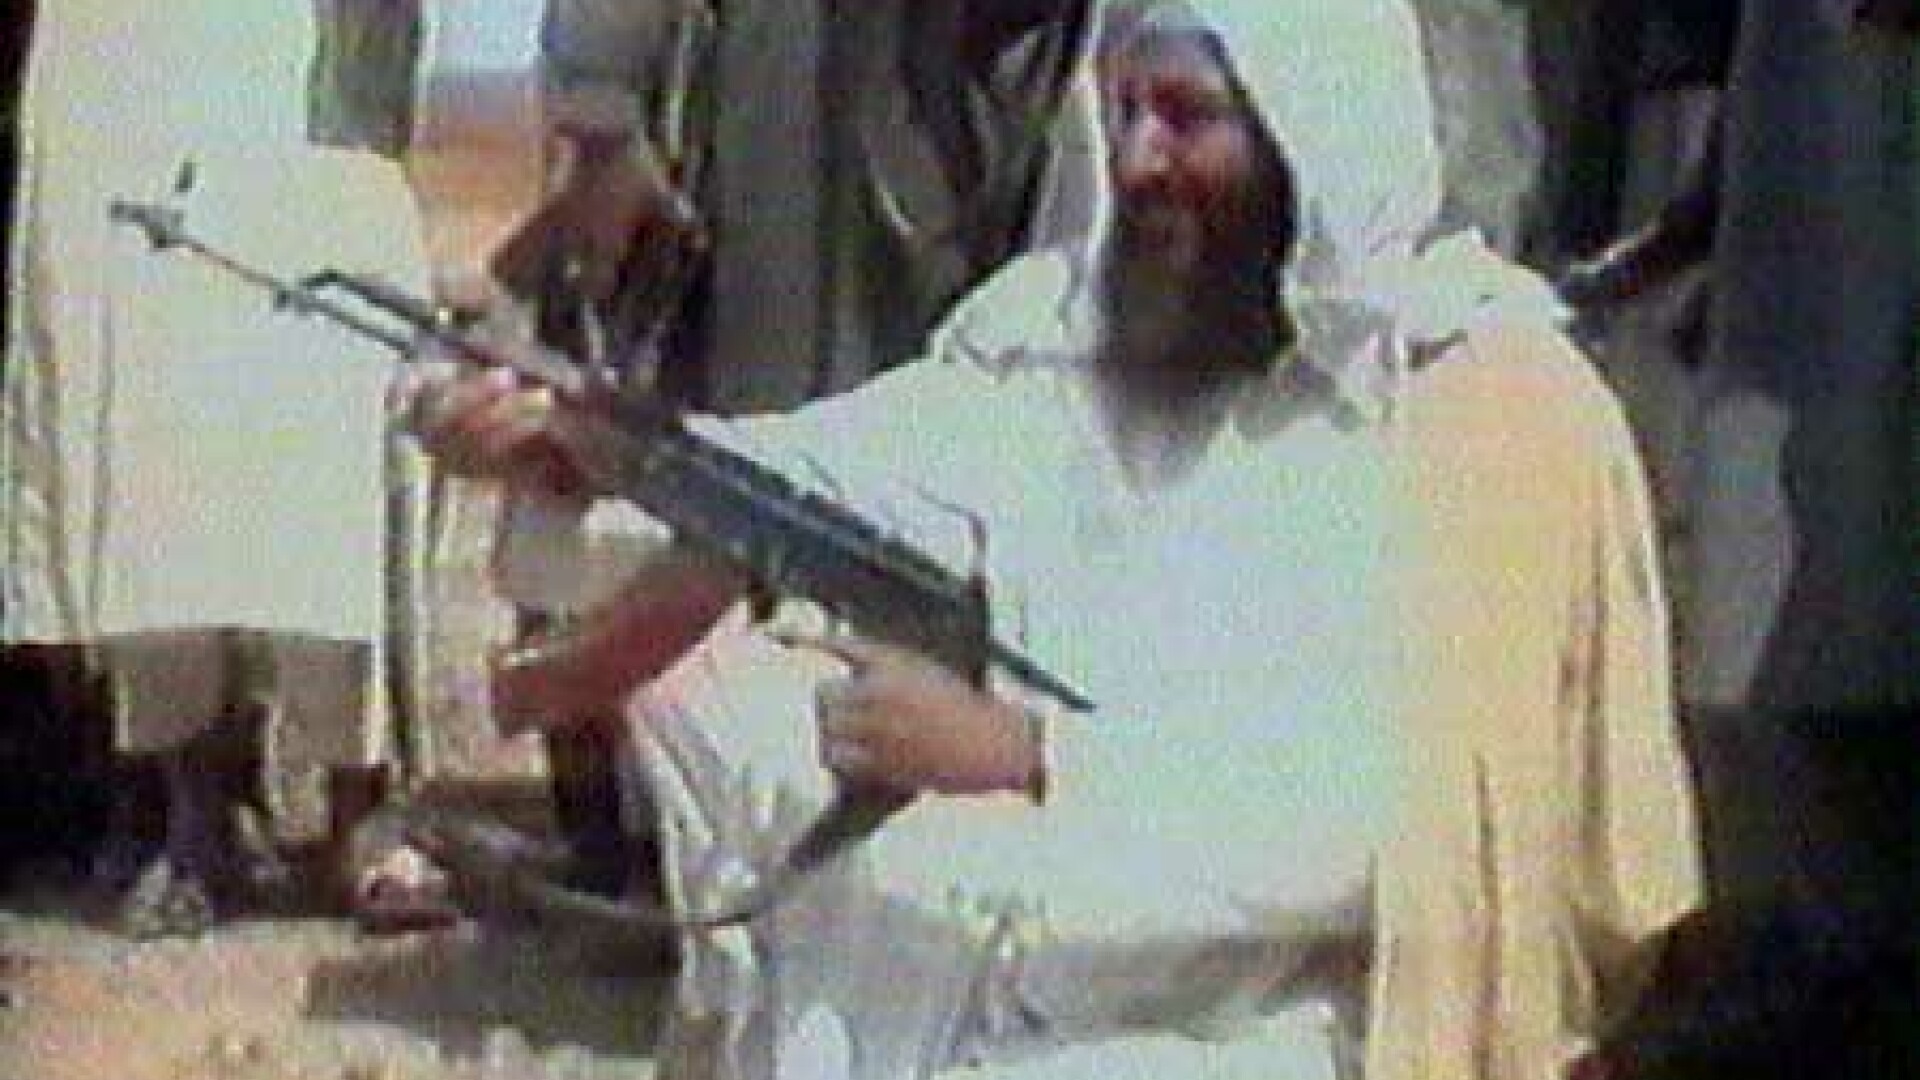 Lumea dupa 11 septembrie: Cine este Osama bin Laden?